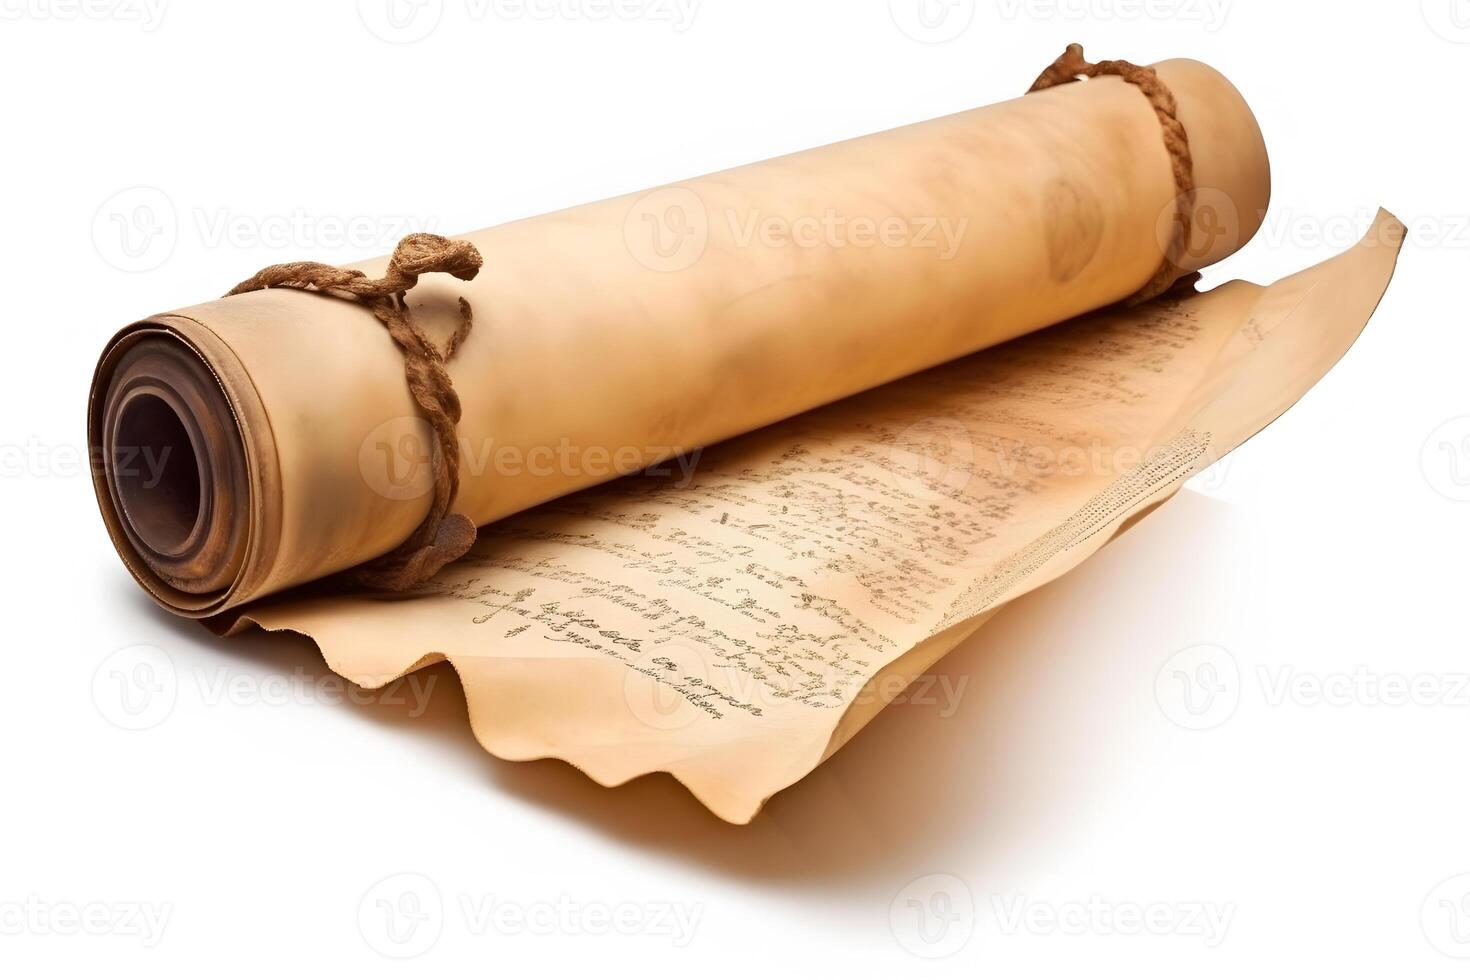 Vintage scrolls or parchment manuscript. Neural network photo